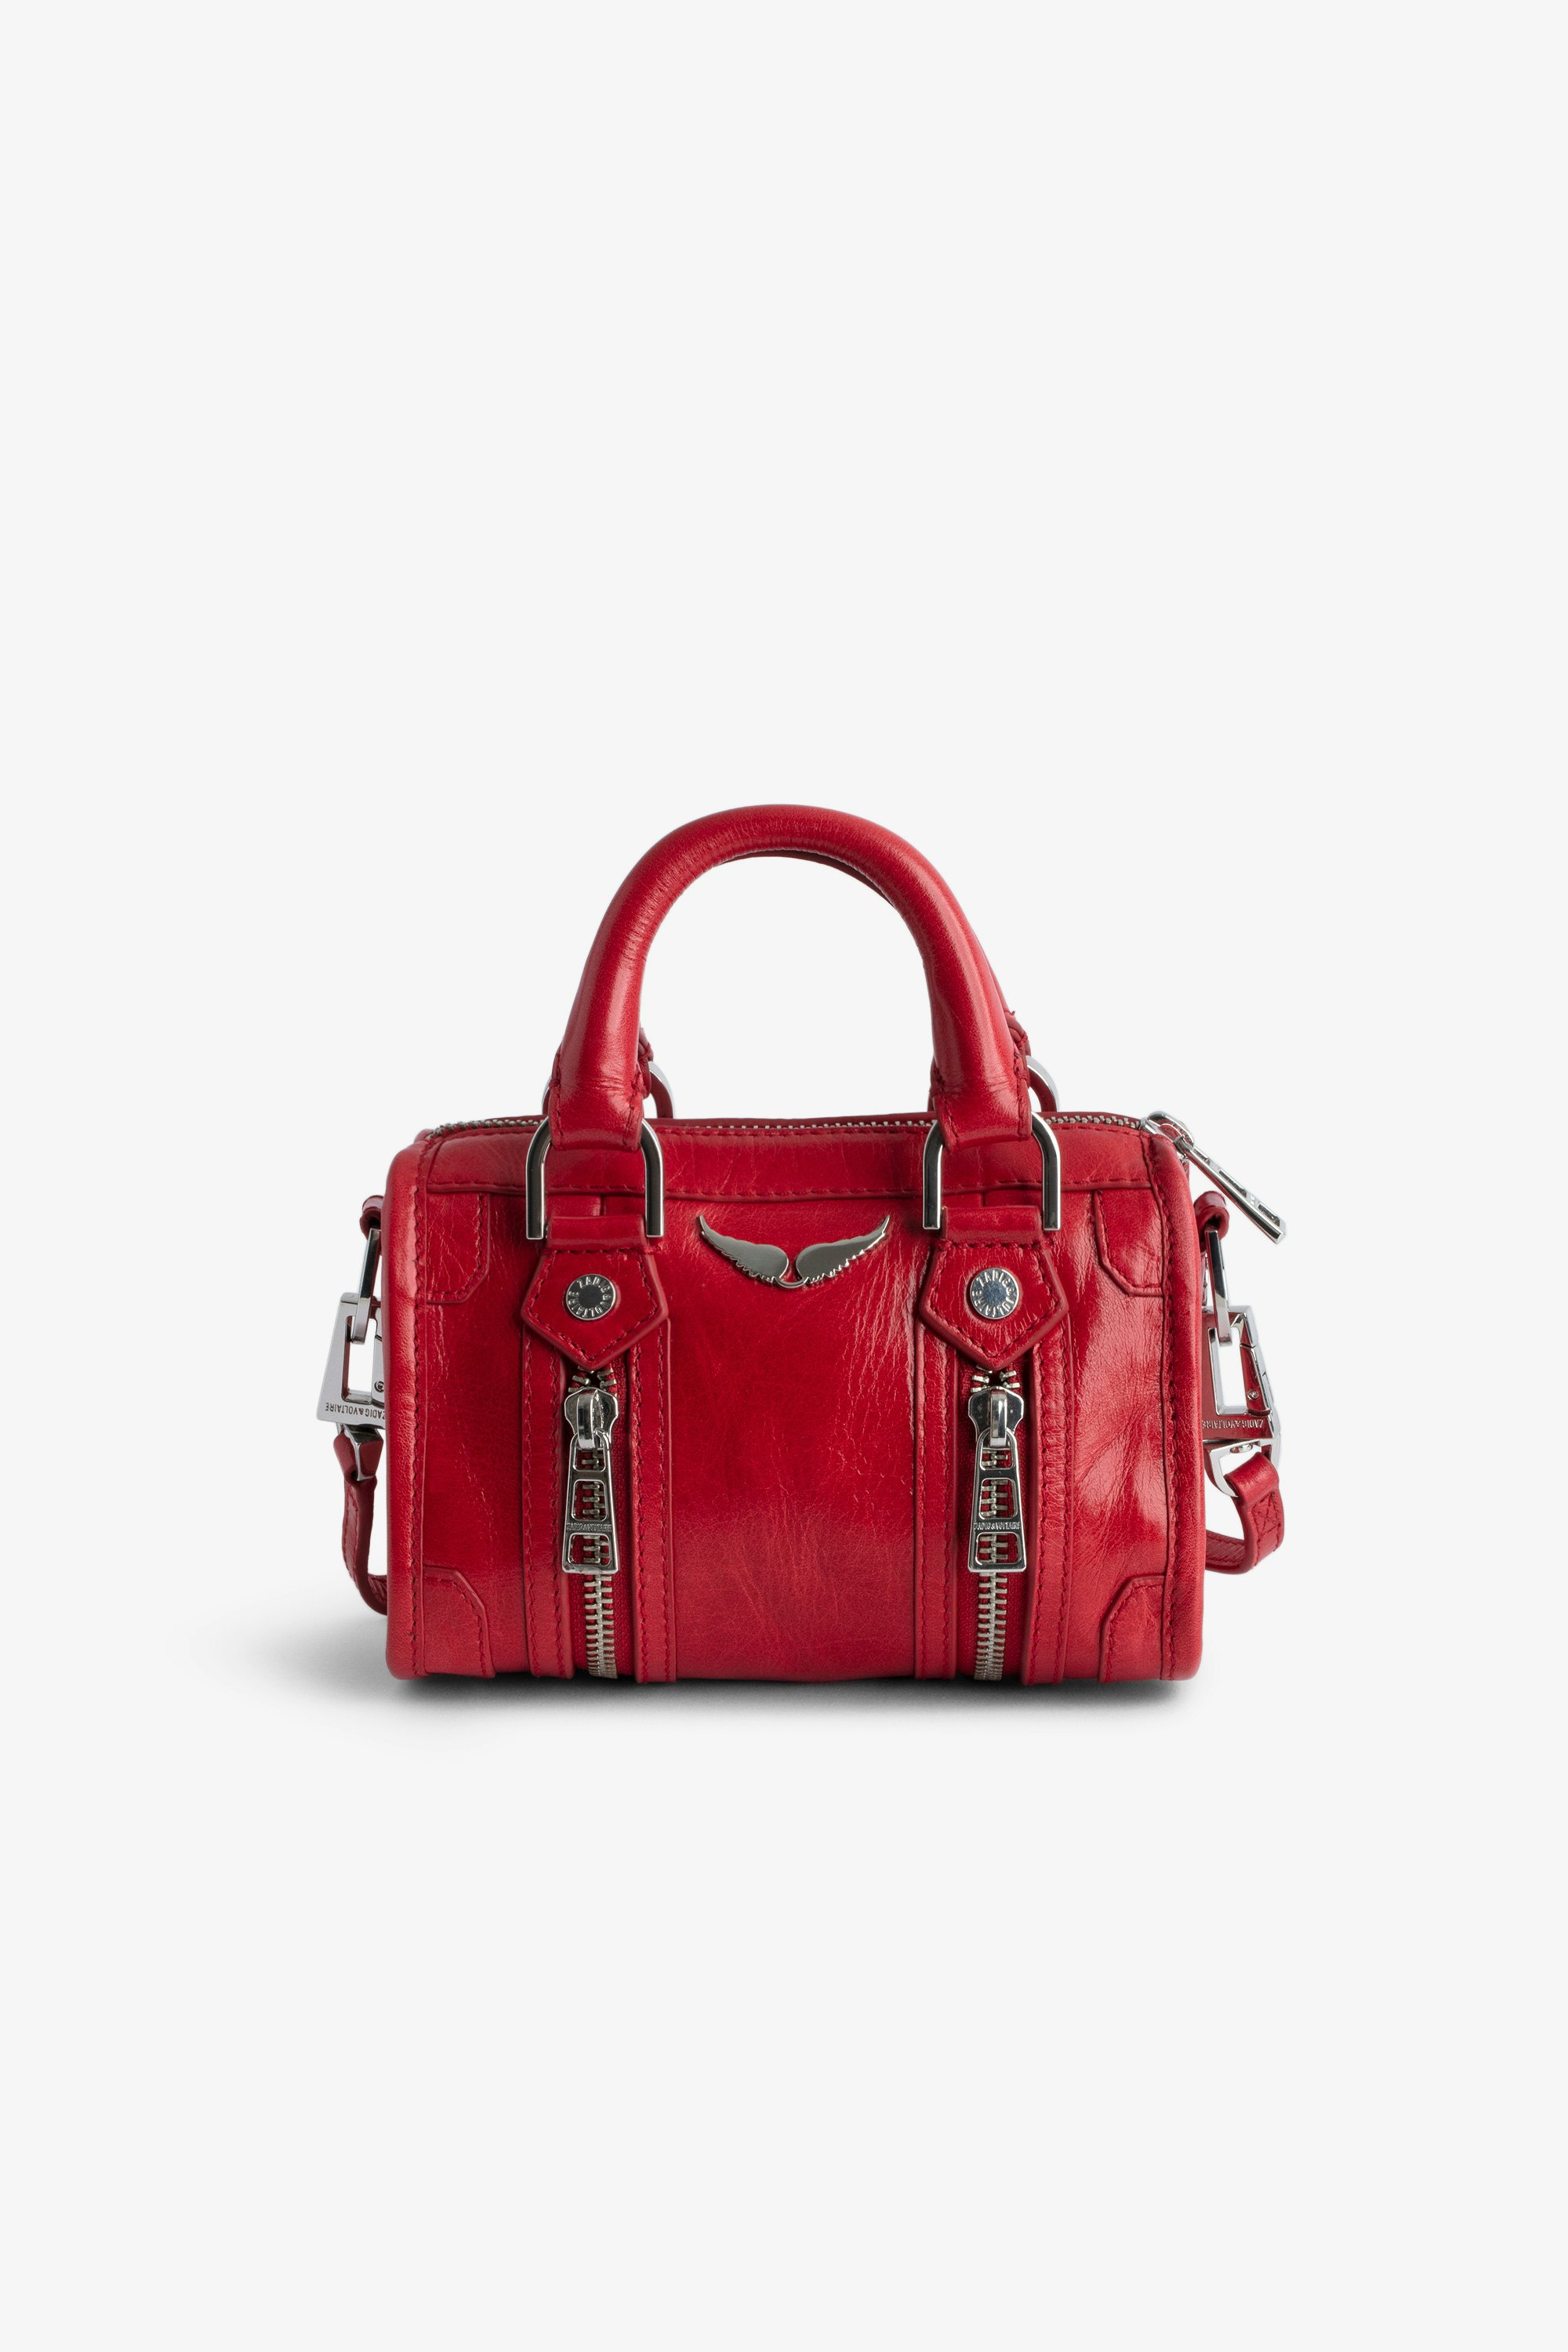 Tasche Sunny Nano #2 - Kleine Handtasche aus rotem Lackleder in Vintage-Optik mit kurzen Henkeln und Schulterriemen.